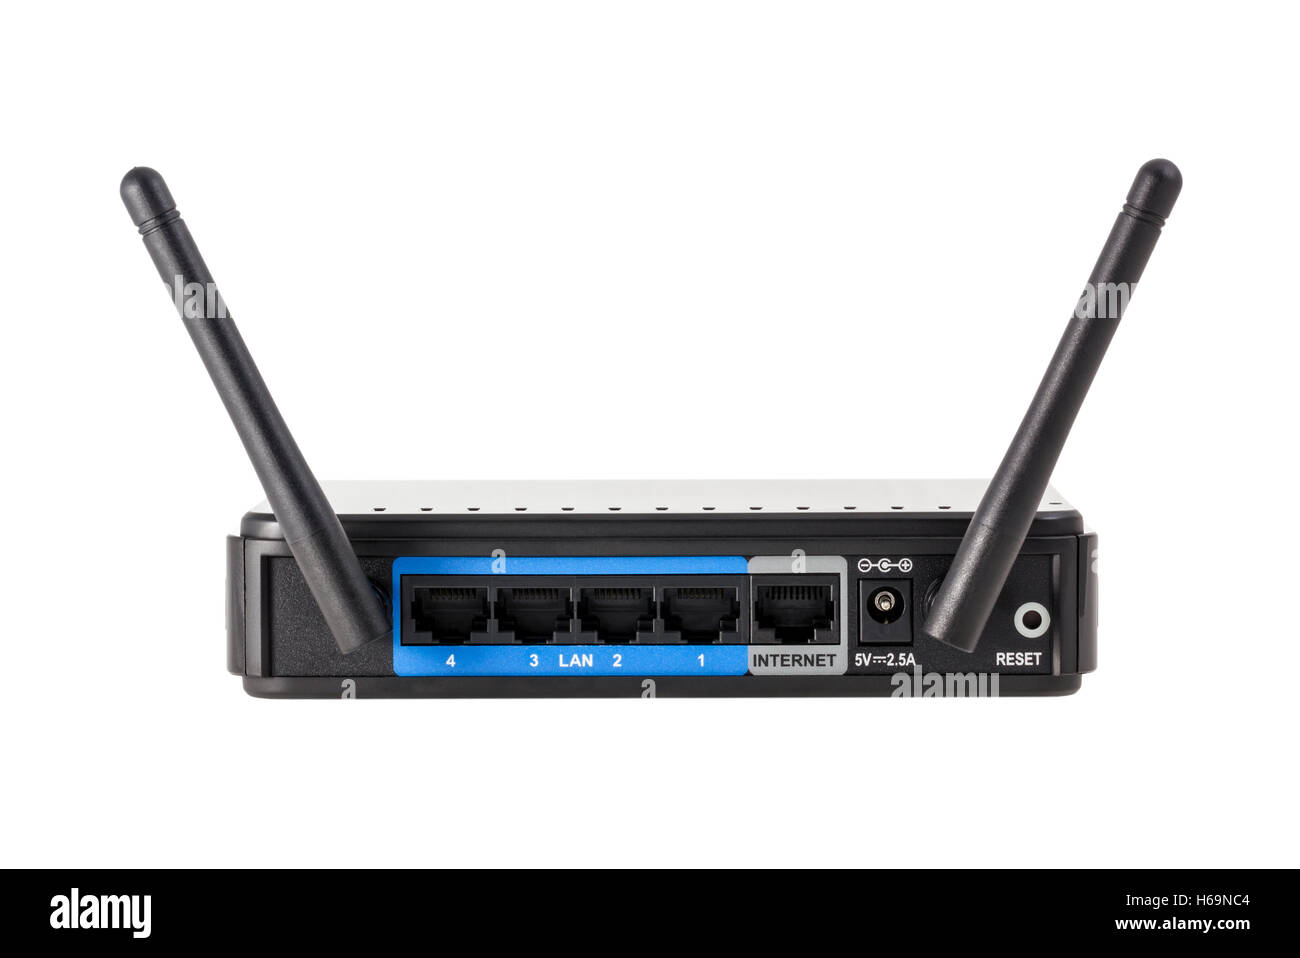 Raccolta elettronica - nero rete internet wireless router wi-fi isolati su sfondo bianco Foto Stock